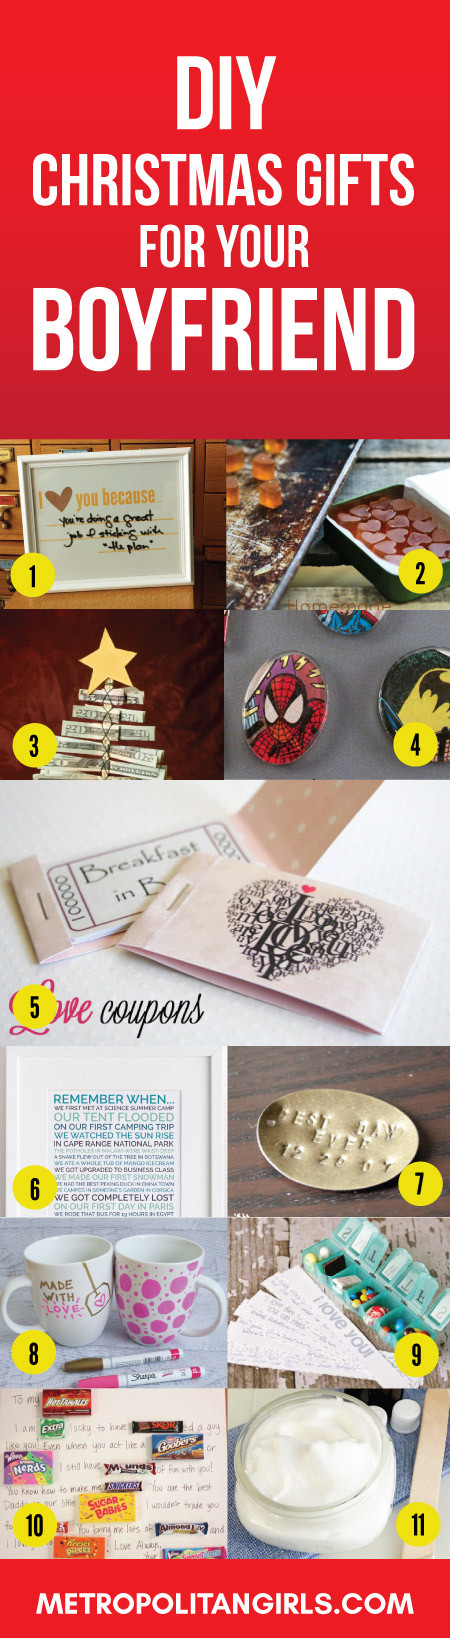 DIY Christmas Gift Ideas For Boyfriend
 Boyfriend Gifts 50 Christmas Gift Ideas for Your Beloved